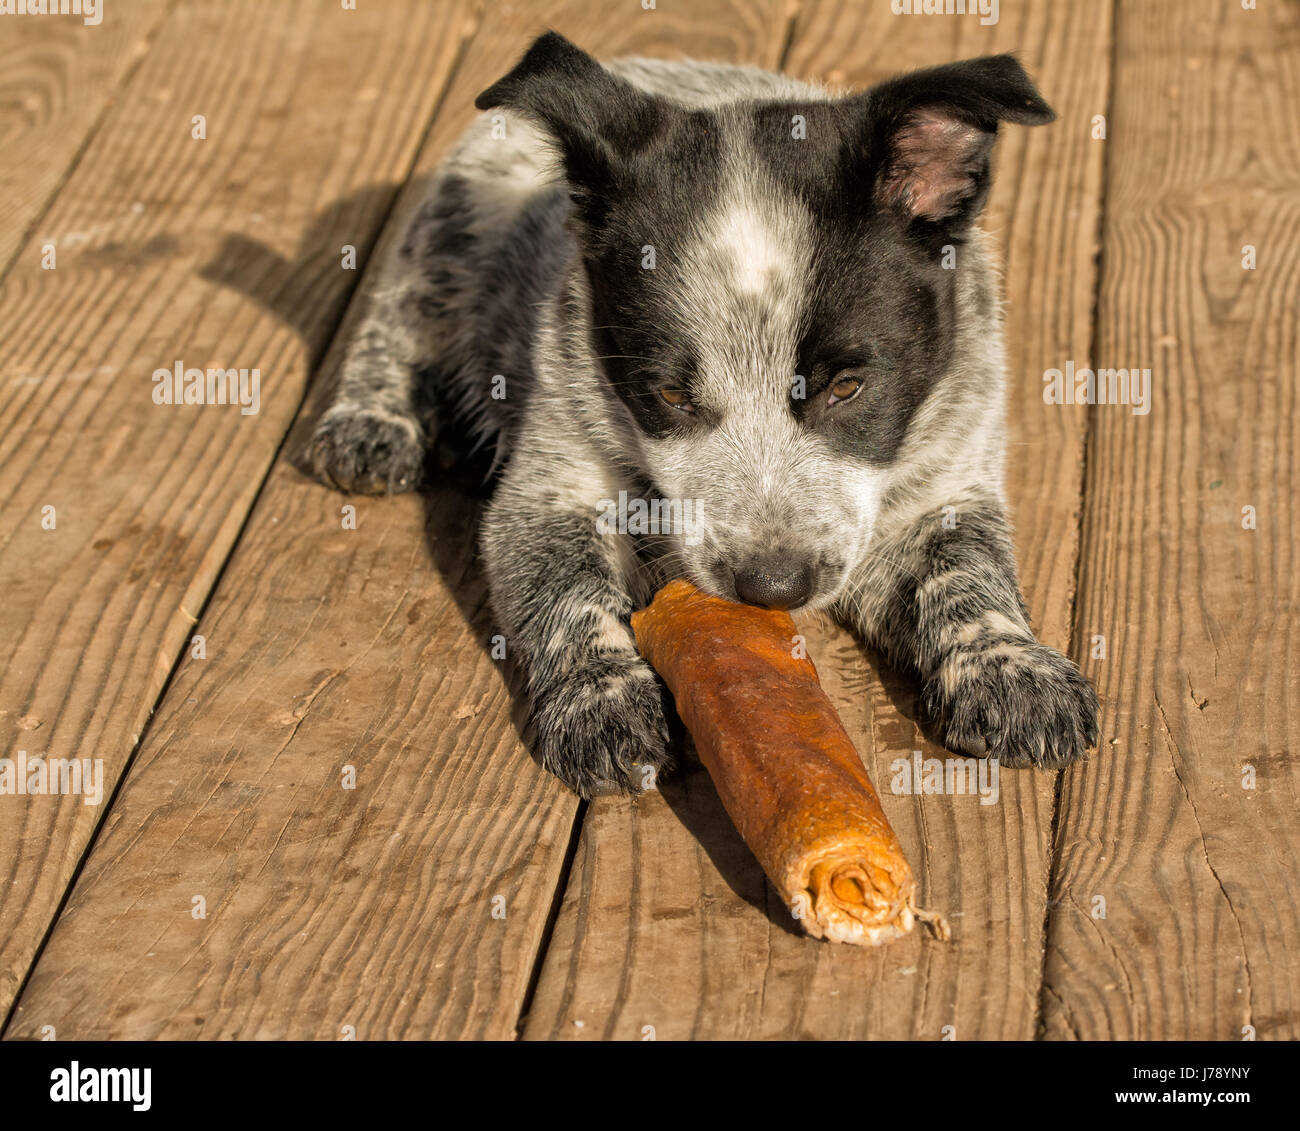 Texas Heeler cucciolo chwing su rawhide stick nel sole al mattino Foto Stock